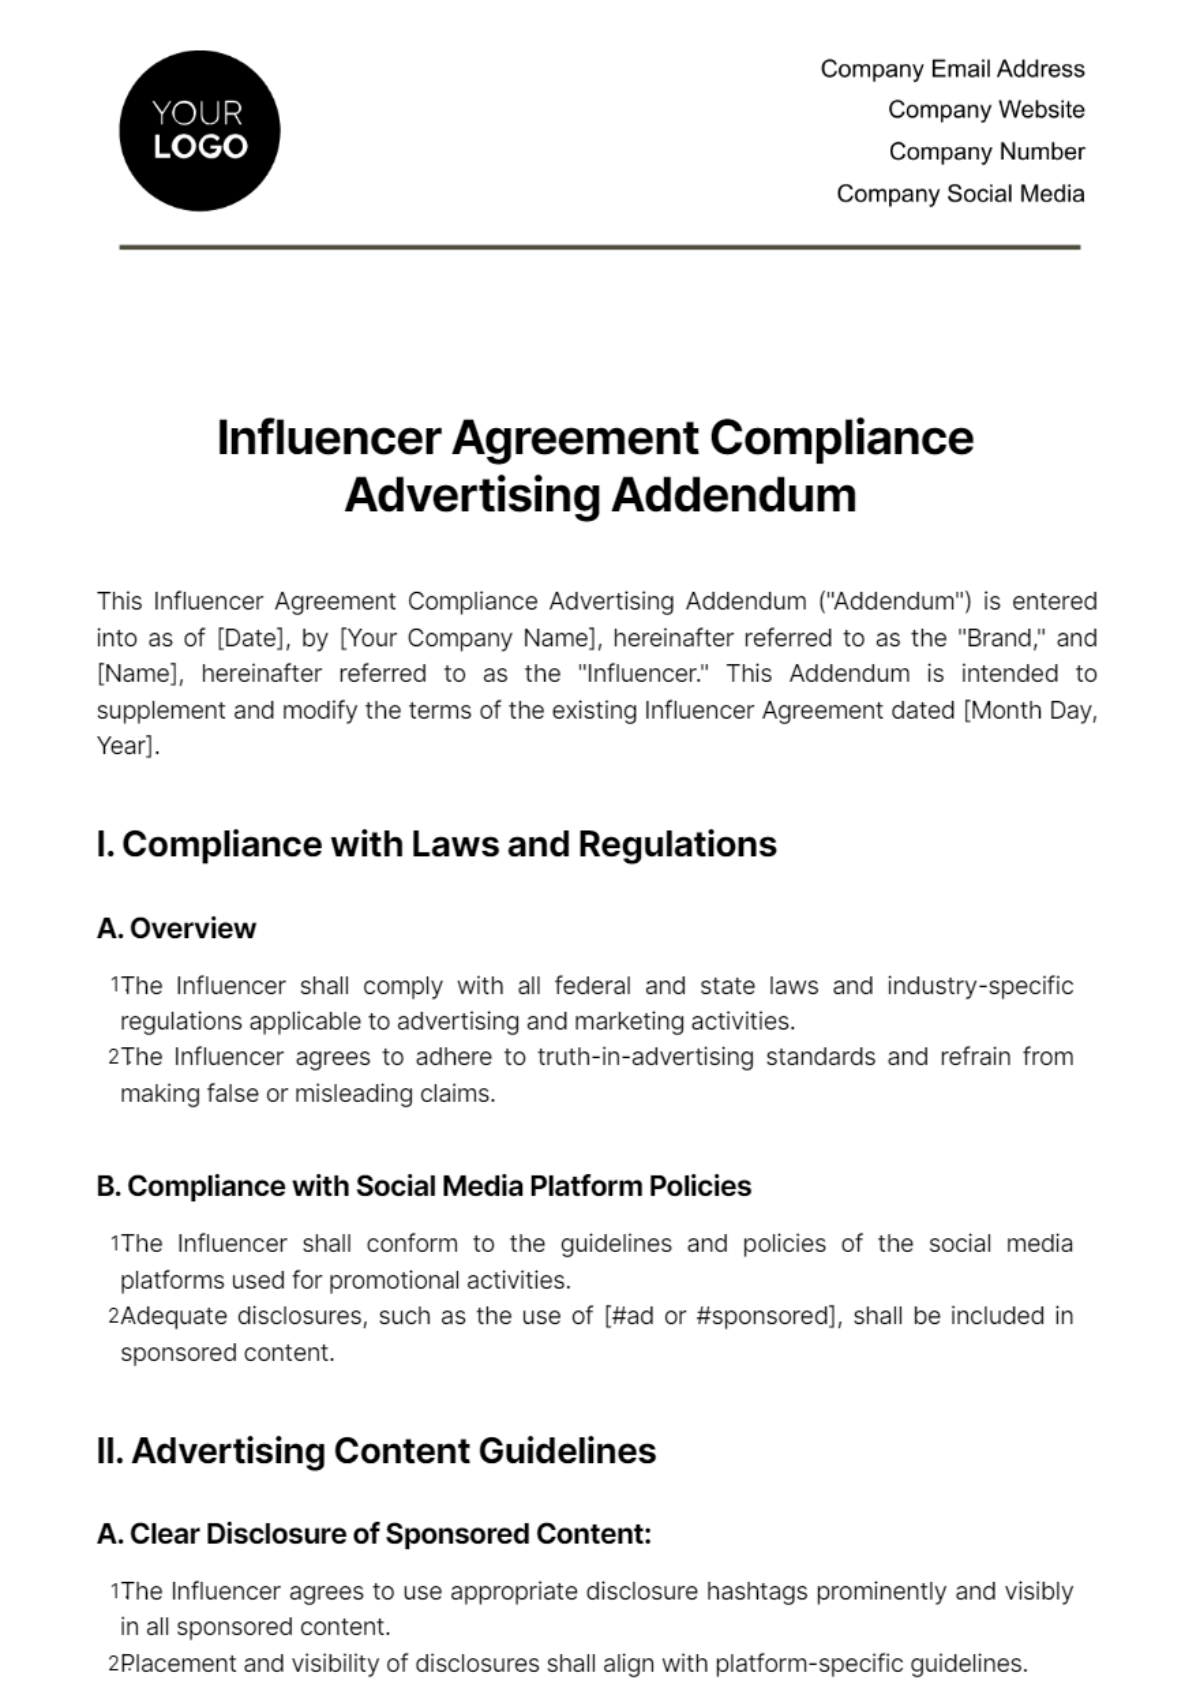 Influencer Agreement Compliance Advertising Addendum Template